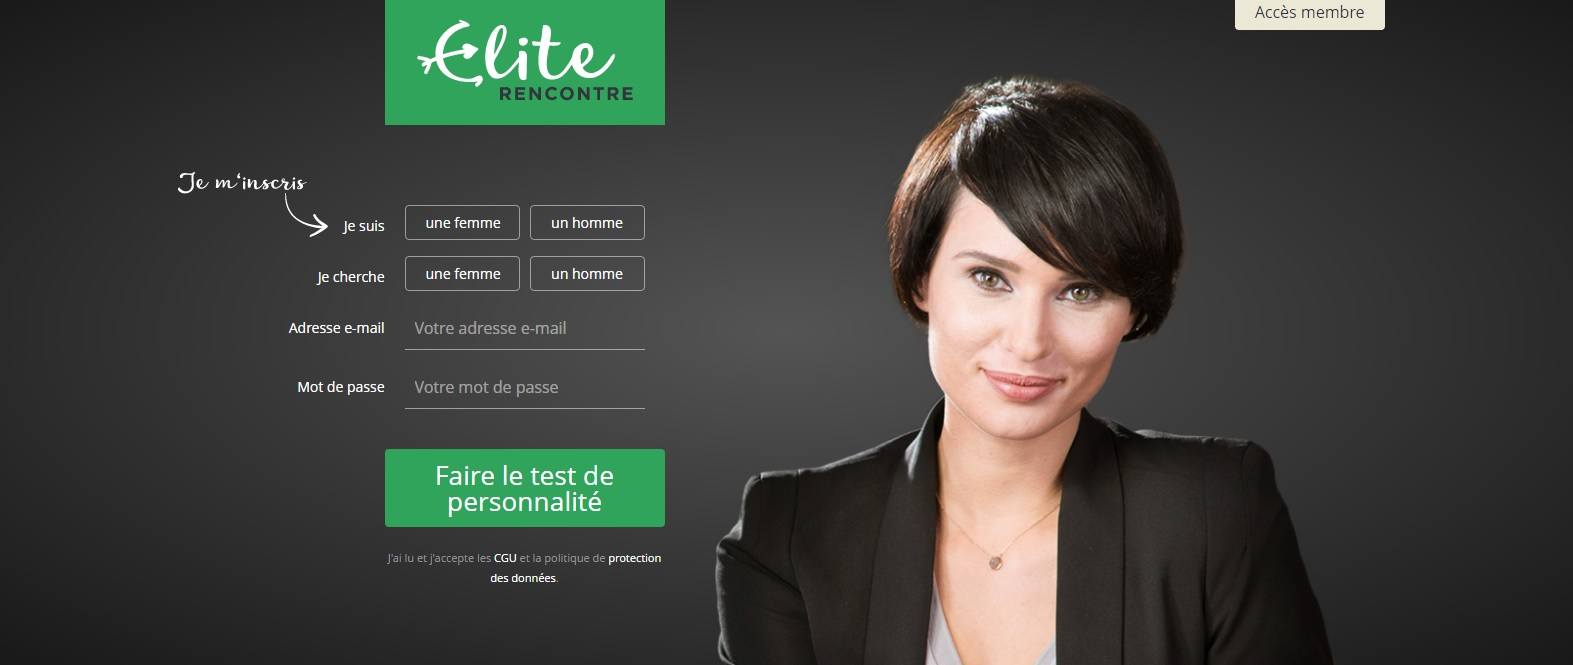 Elite rencontre : comment fonctionne ce site de rencontres ? : Femme Actuelle Le MAG